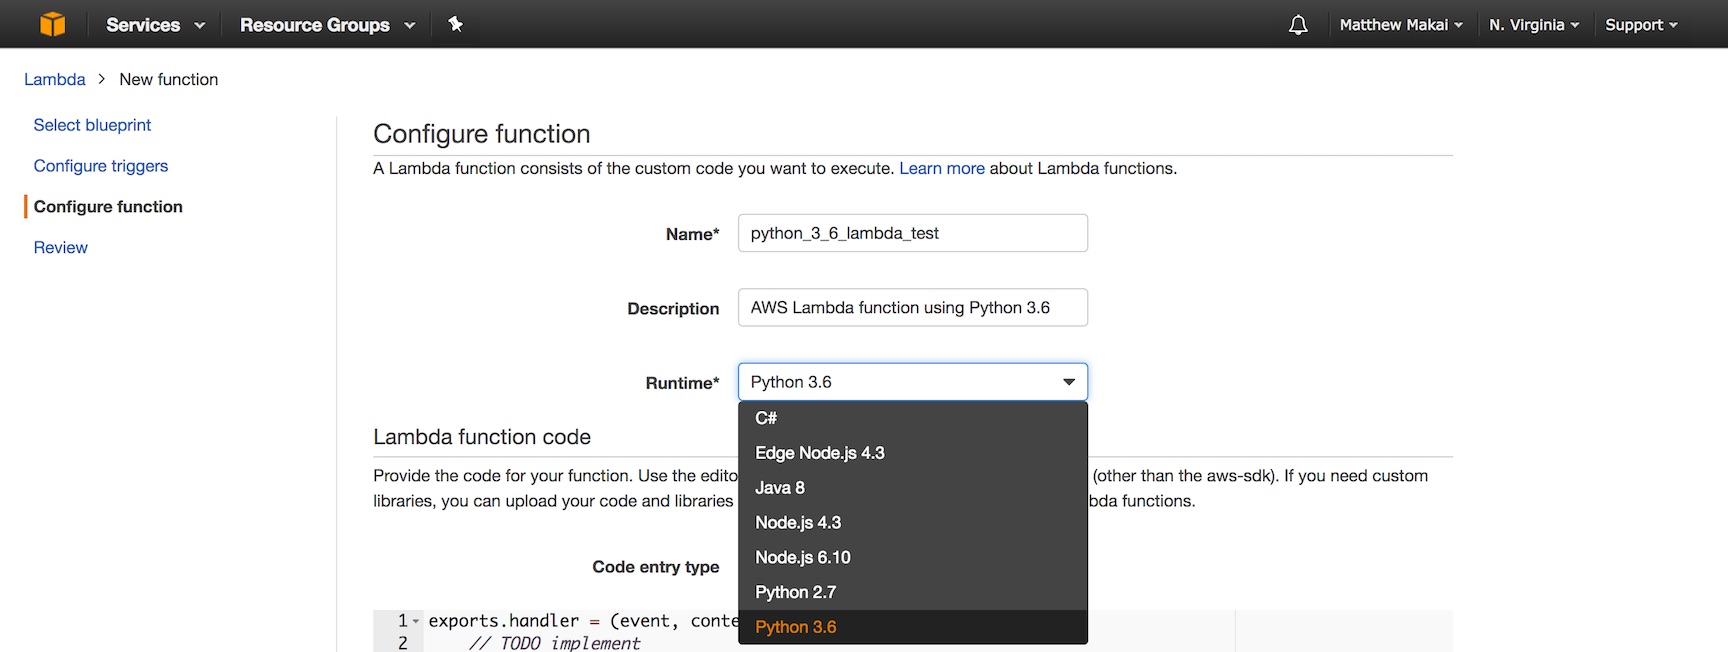 Enter a name, description and use Python 3.6 for the Lambda.